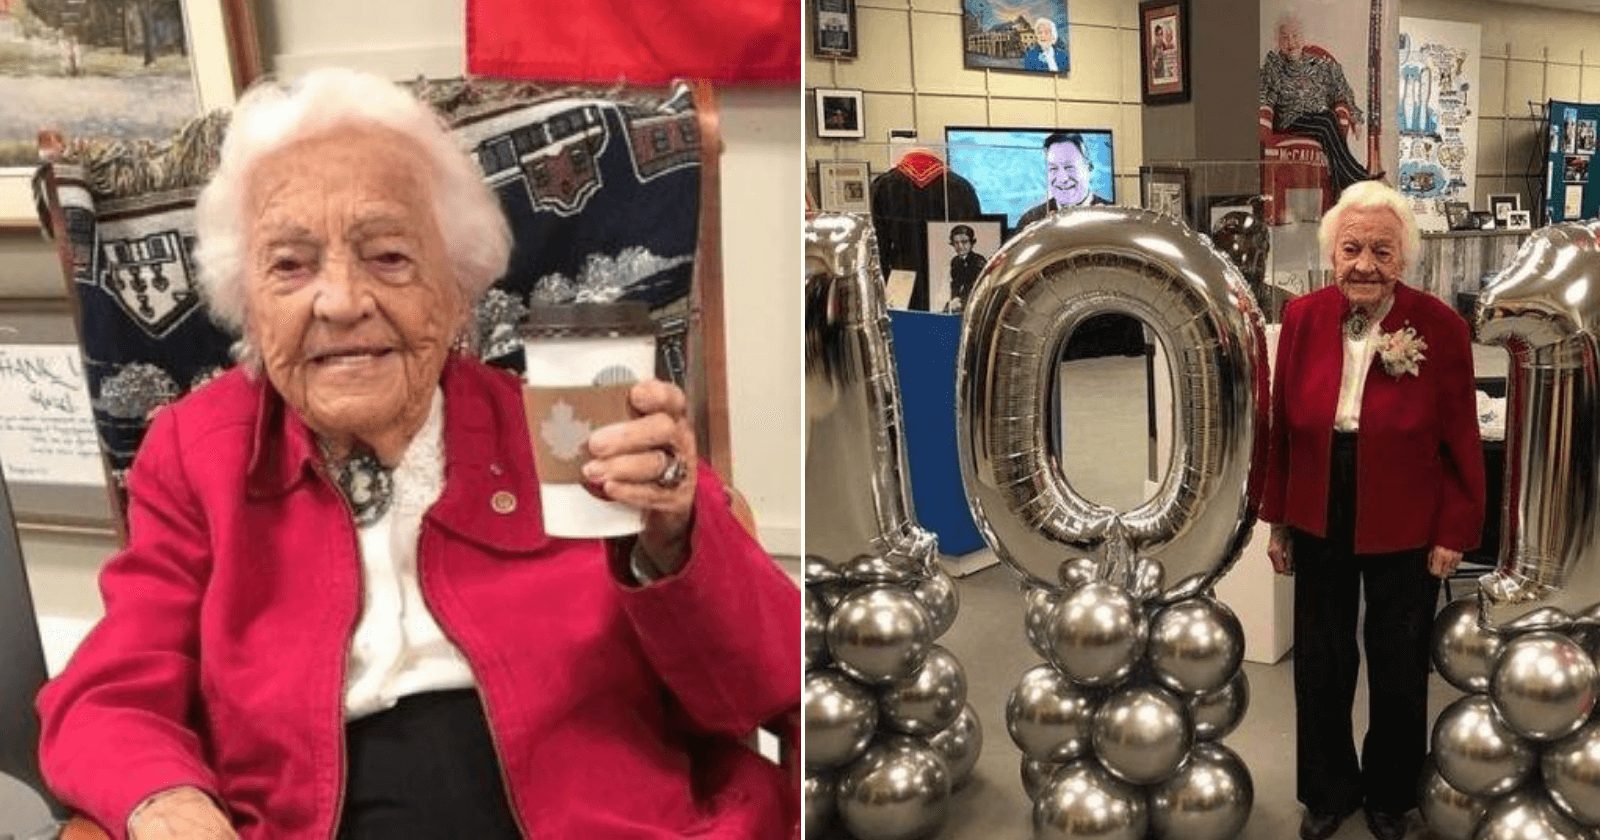 Com 101 anos, idosa comemora aniversário e renova contrato de trabalho até 2025